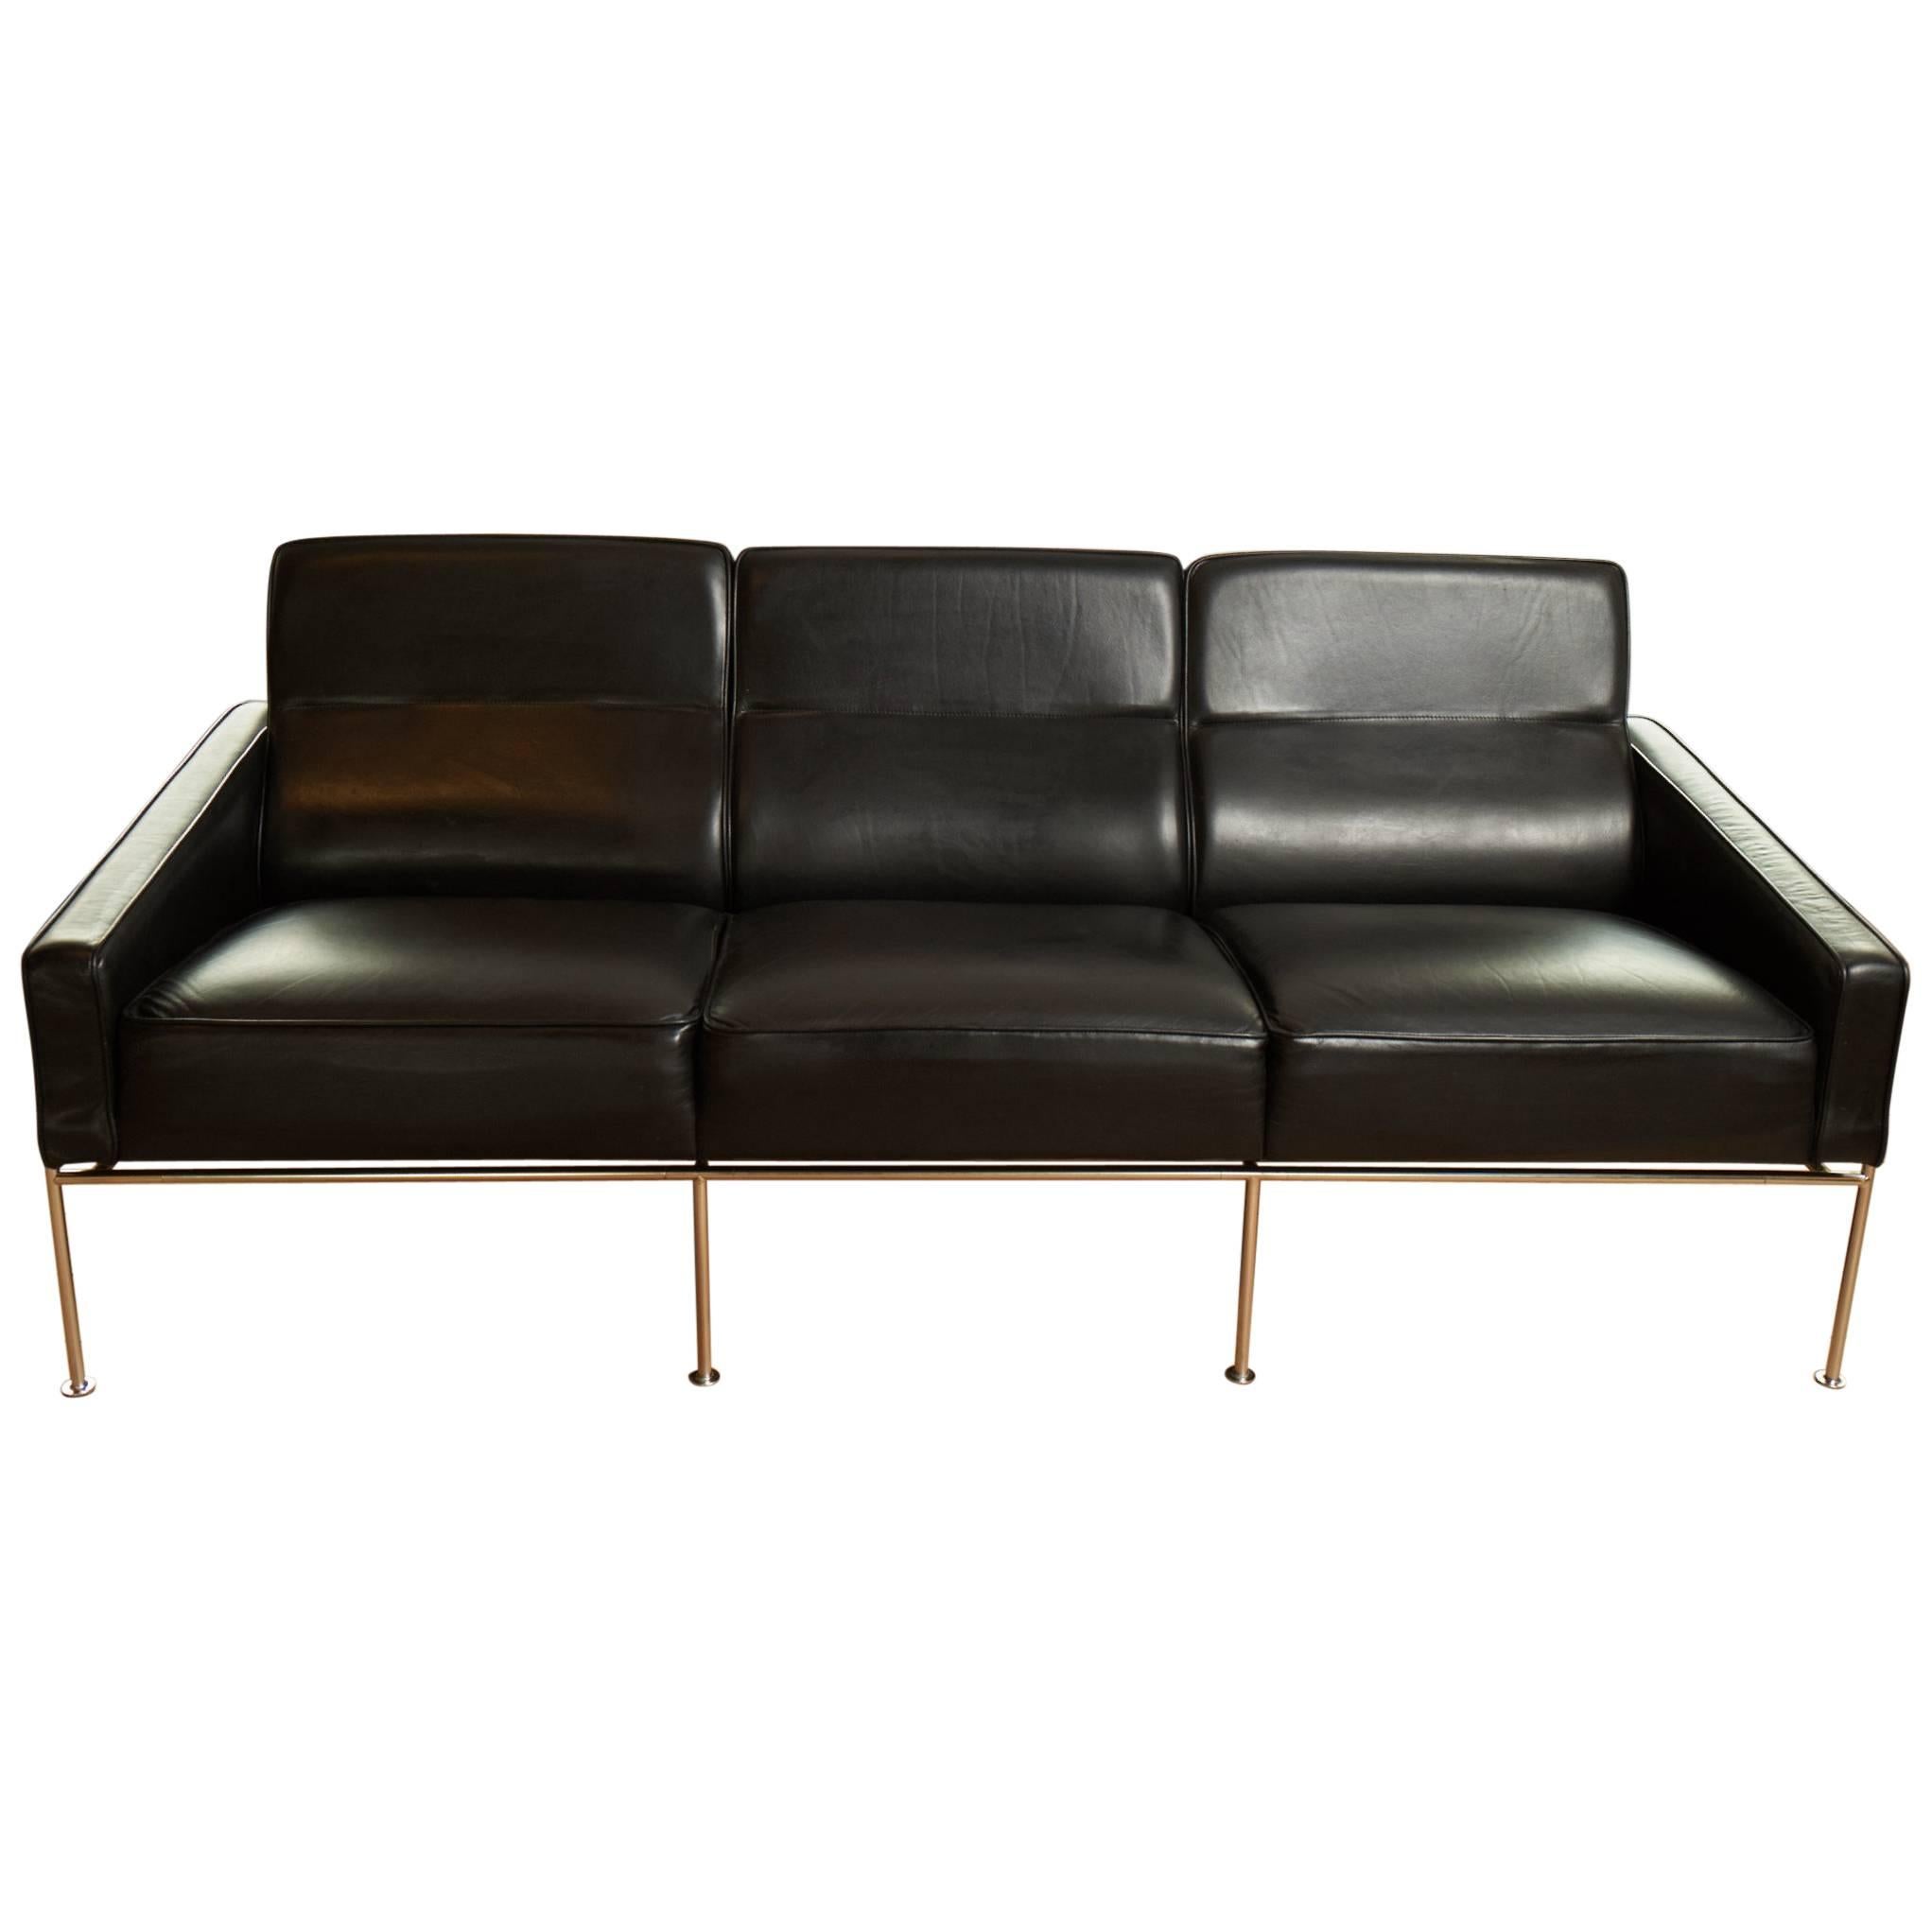 Arne Jacobsen Sofa 3302 - For Sale on 1stDibs